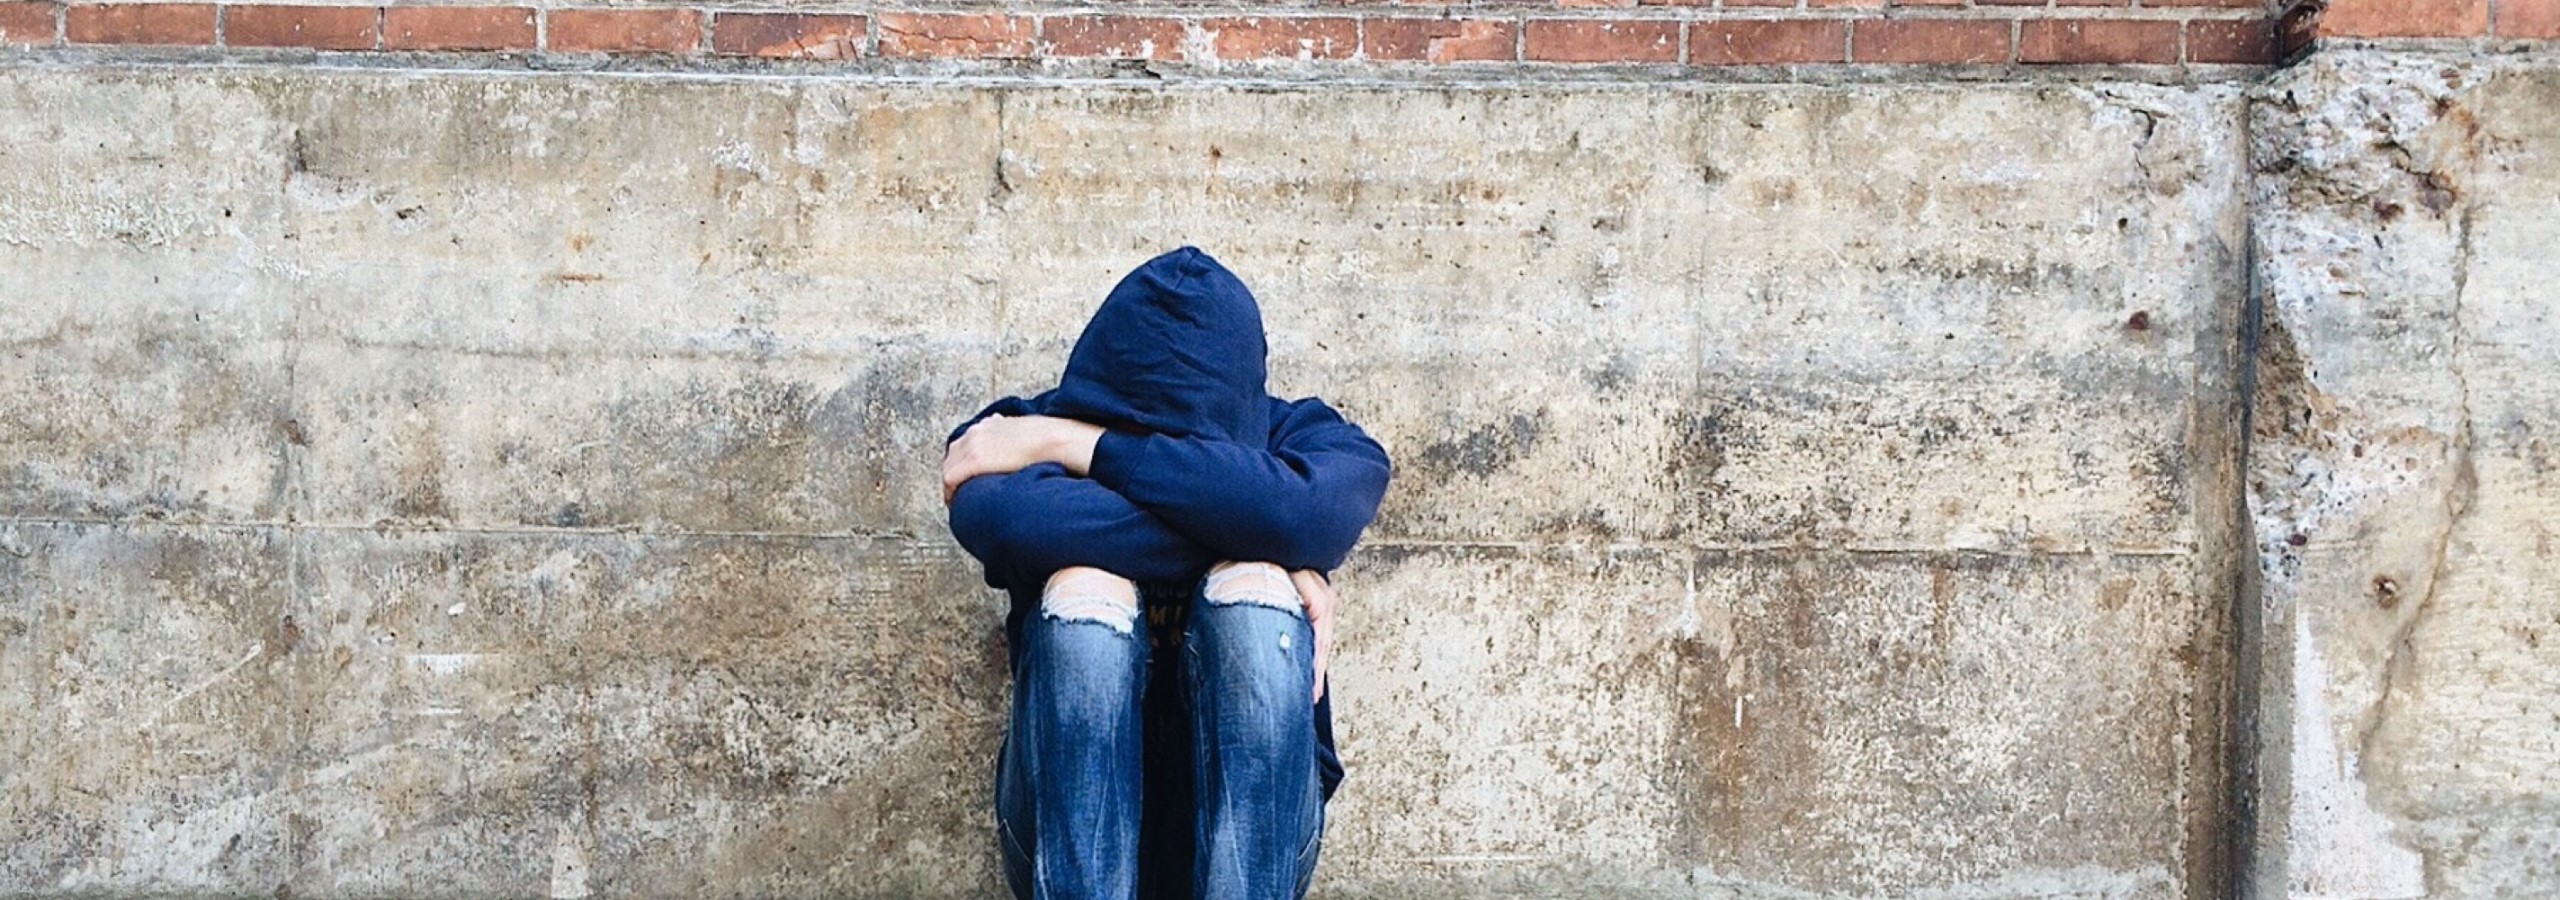 Jugendprobleme - Panoramaschnitt Jugendlicher deprimiert sitzend vor einer Ziegelmauer